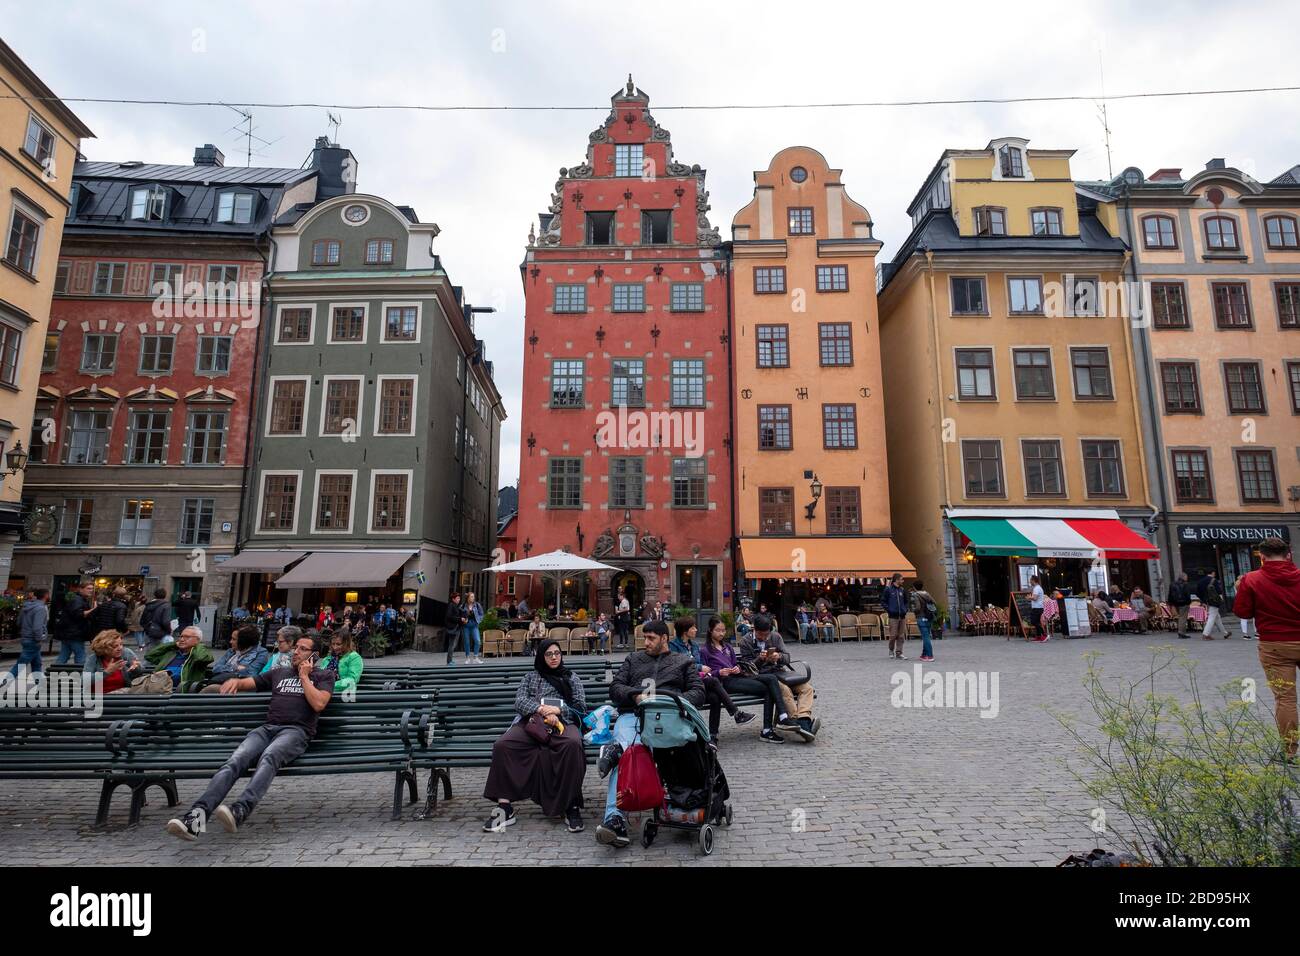 Maisons colorées sur Gamla stan, Stockholm, Suède, Europe Banque D'Images